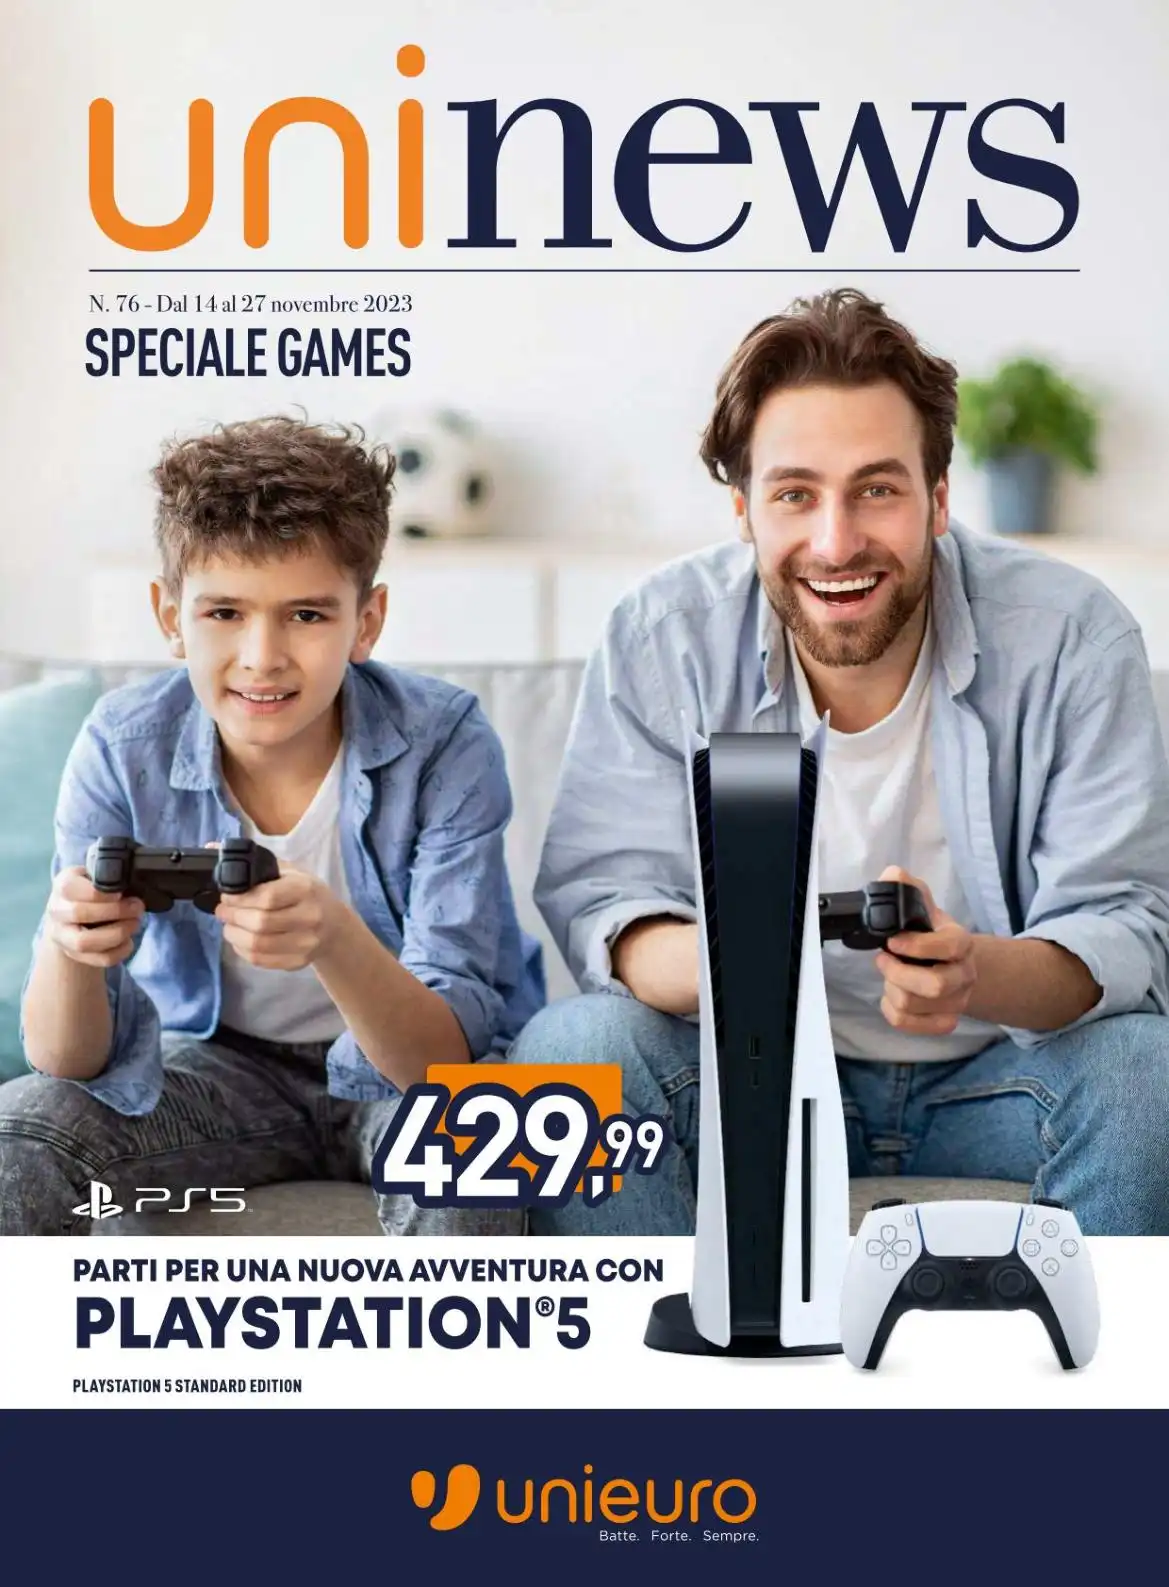 UniNews Speciale Games: offerte sul volantino Unieuro dal 14/11 al 27/11/2023